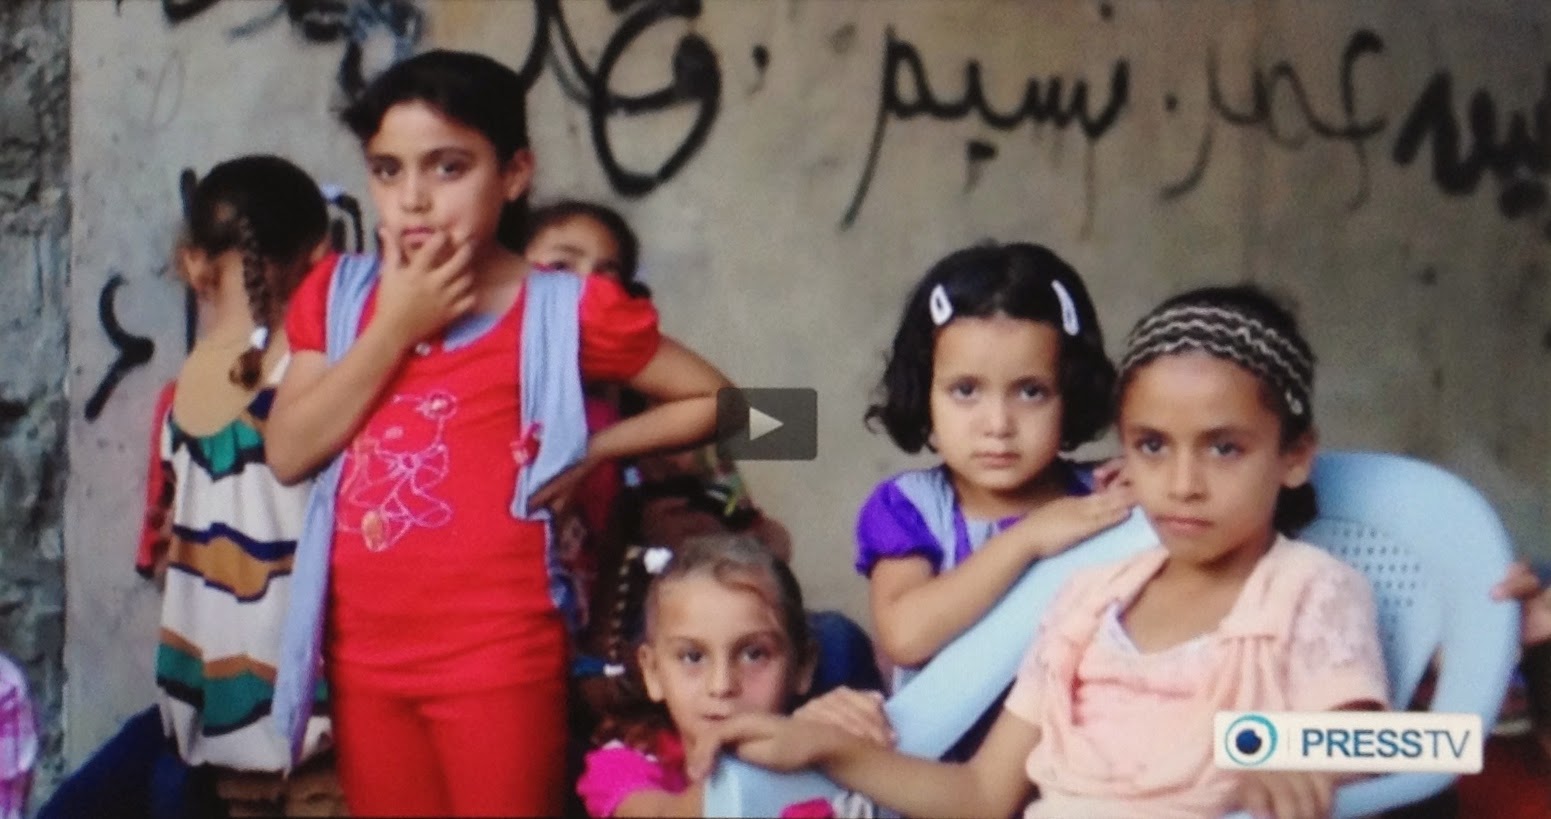 http://www.presstv.com/detail/2014/10/02/380829/israeli-war-orphaned-gaza-children/